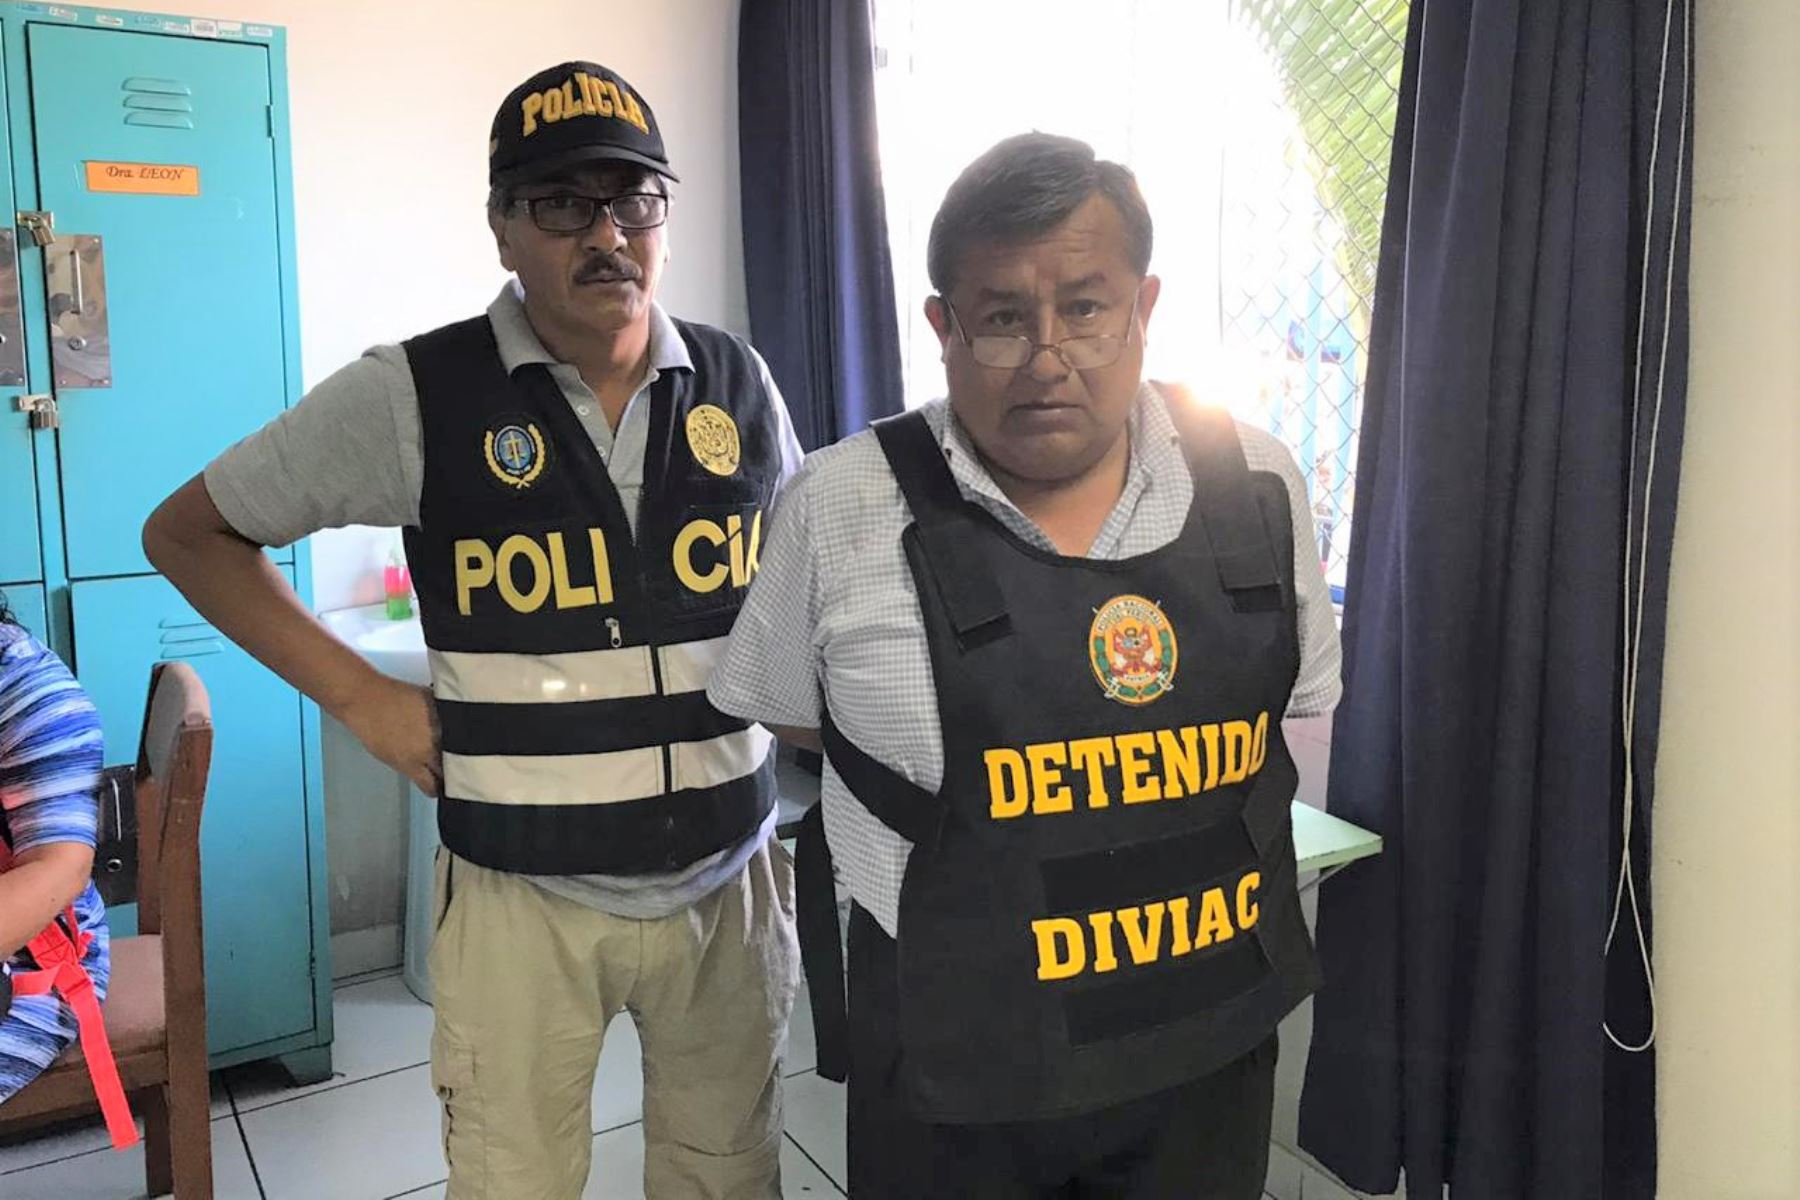 Policía Nacional y Ministerio Público detienen en Trujillo a funcionarios por presuntos vínculos con organización criminal. ANDINA/Difusión